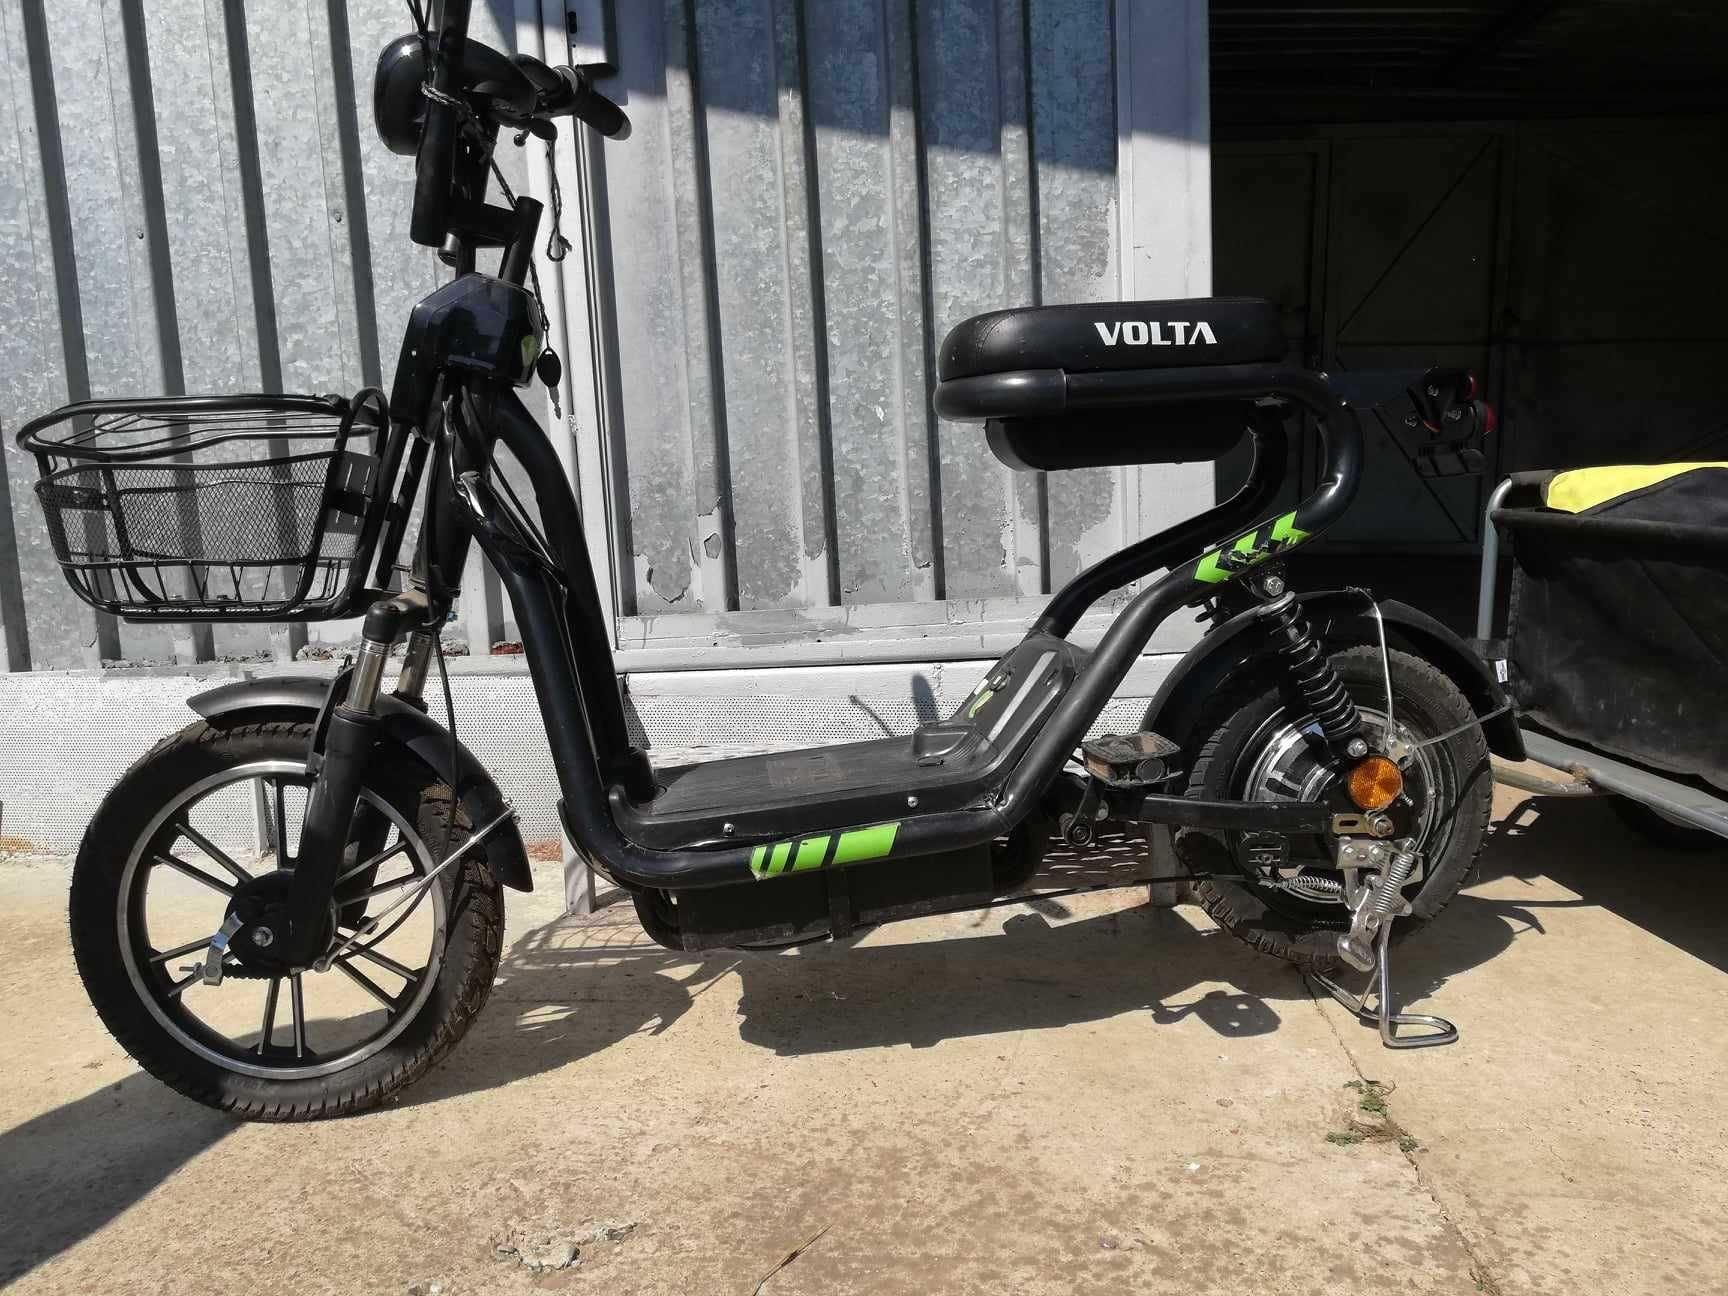 Bicicleta electrica VST, VOLTA, 25km/h, Negru